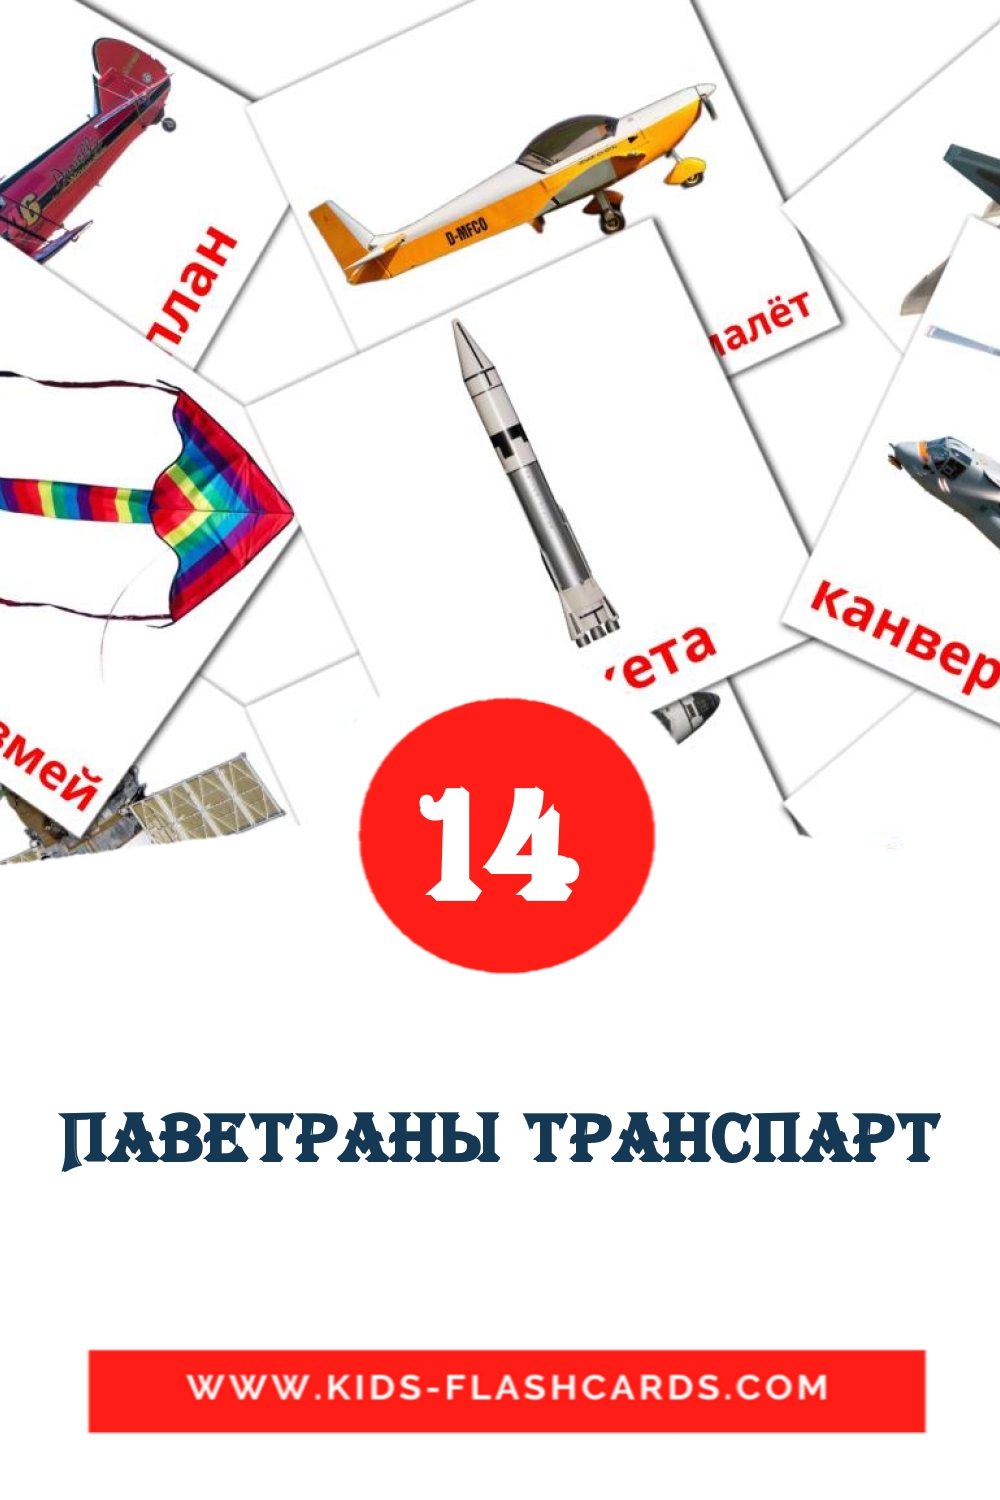 14 Паветраны транспарт Bildkarten für den Kindergarten auf Weißrussisch